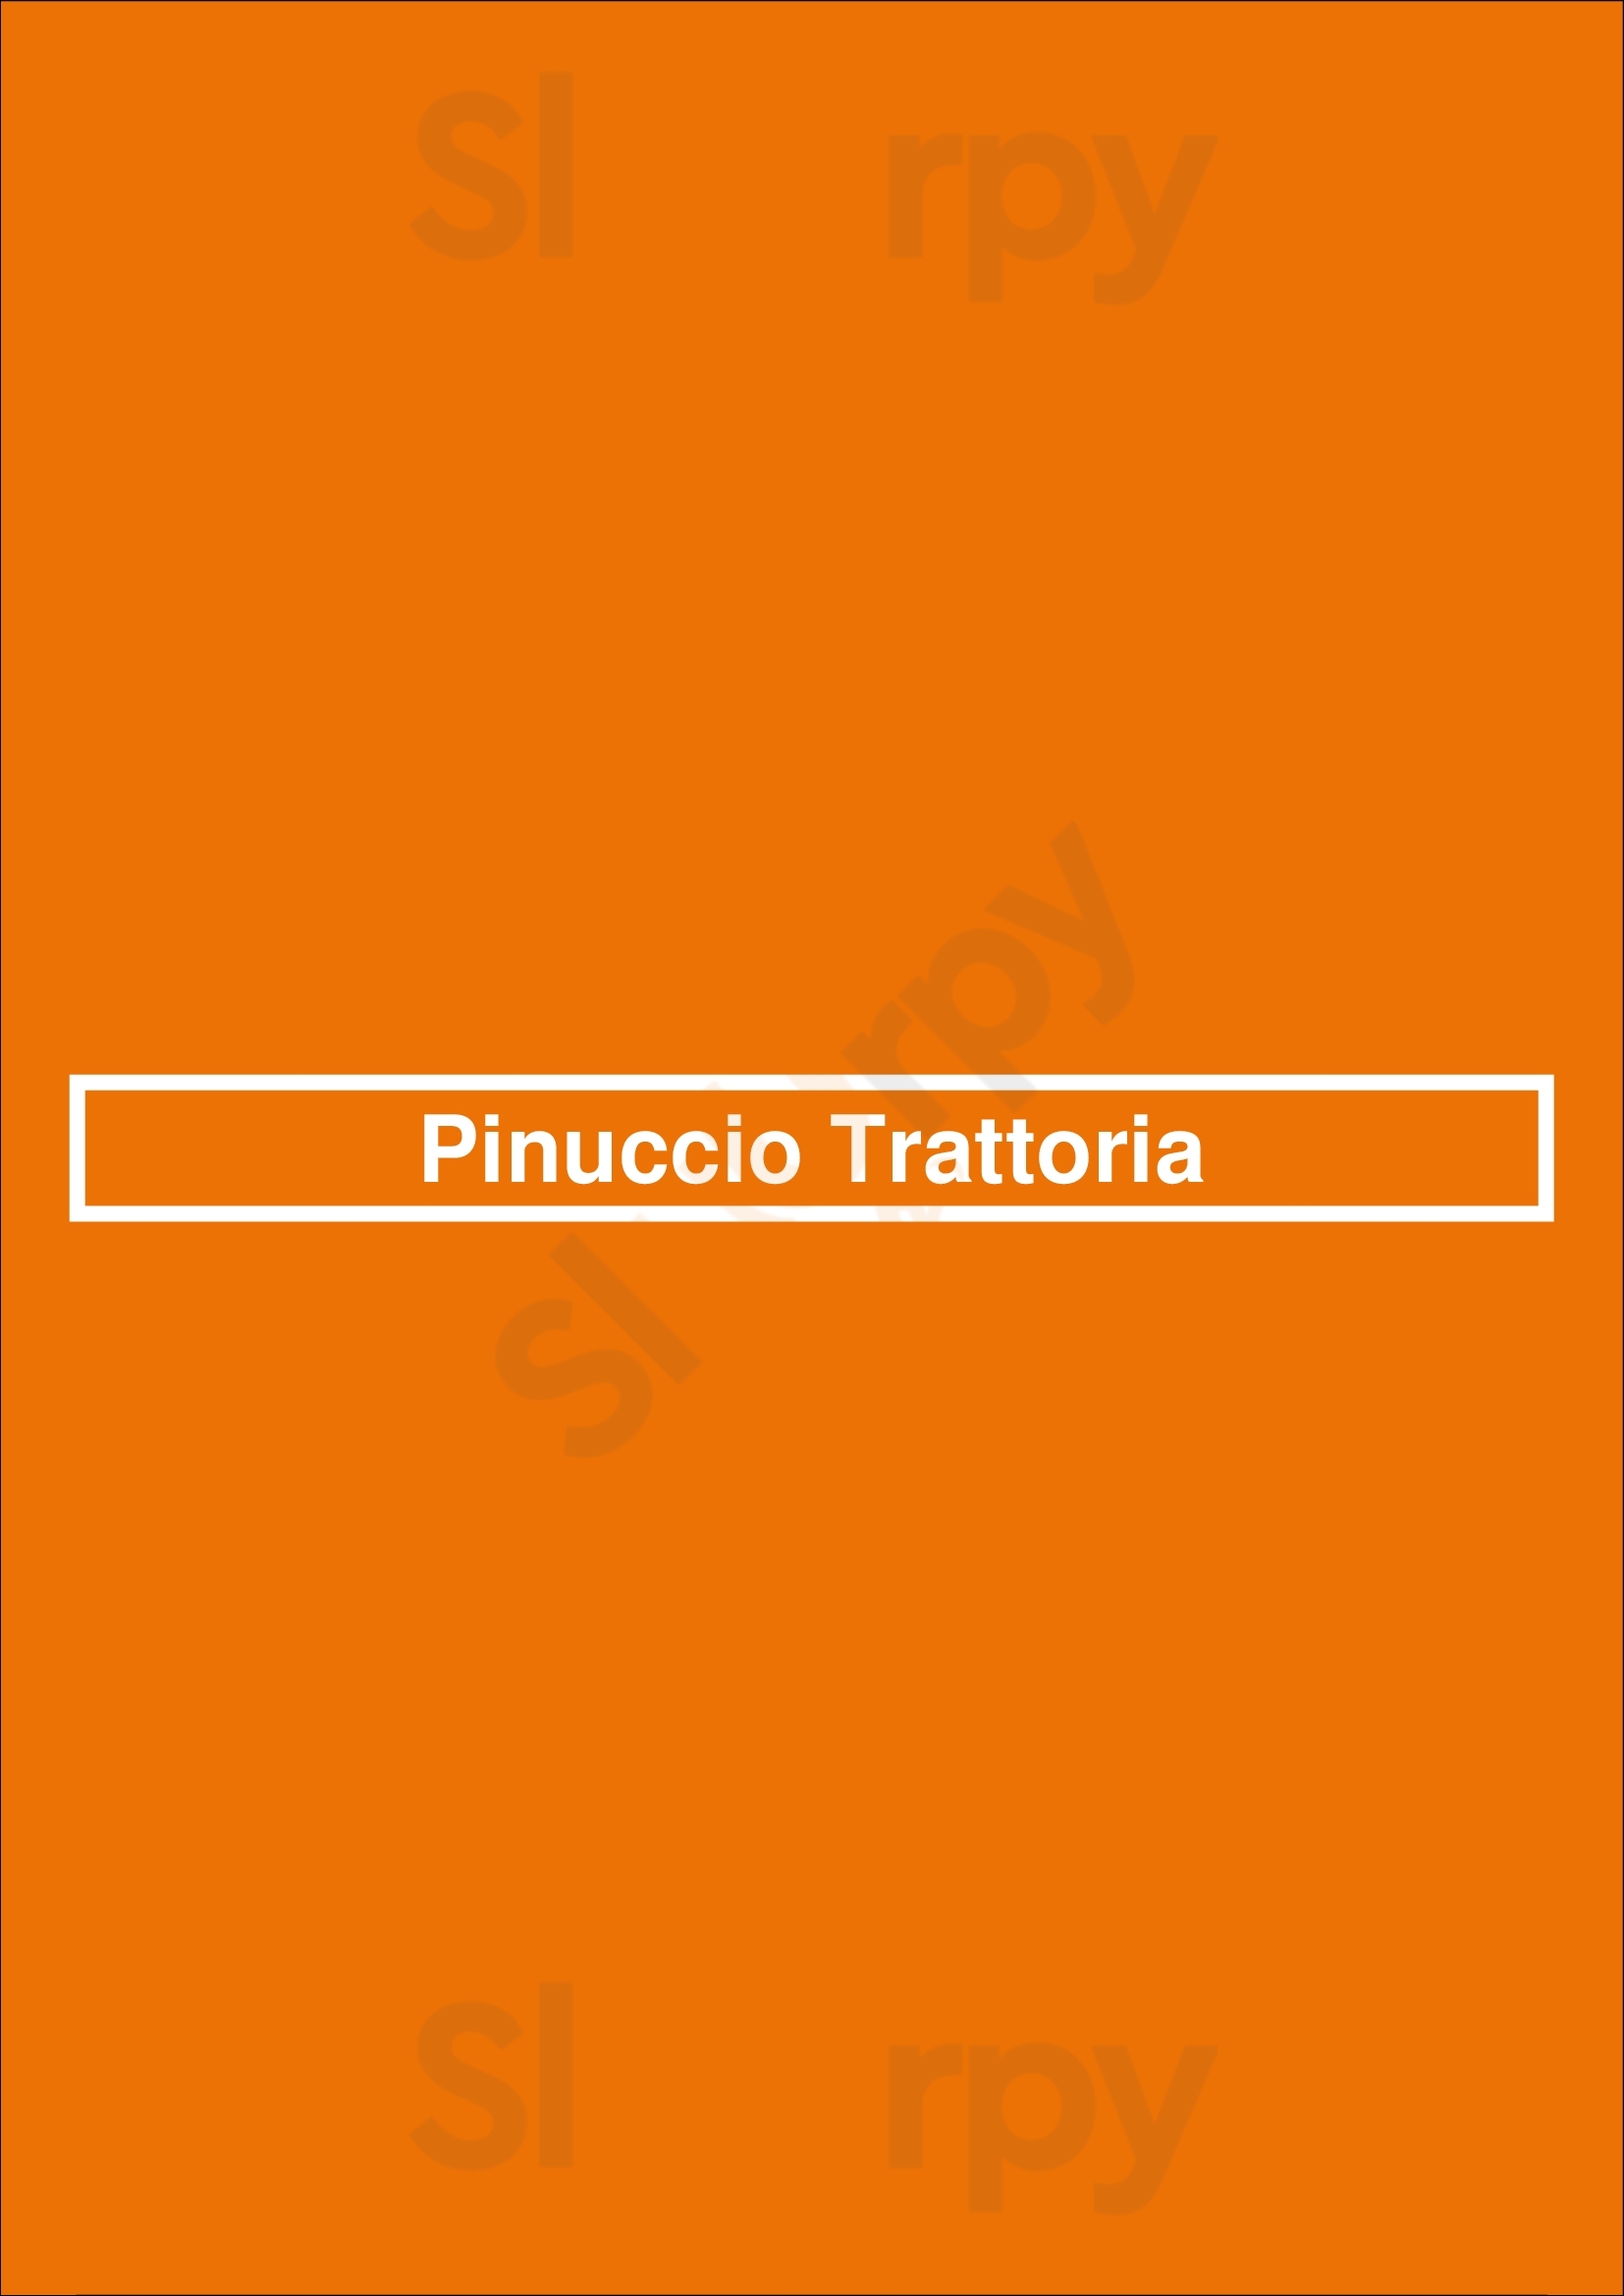 Pinuccio Trattoria Buenos Aires Menu - 1